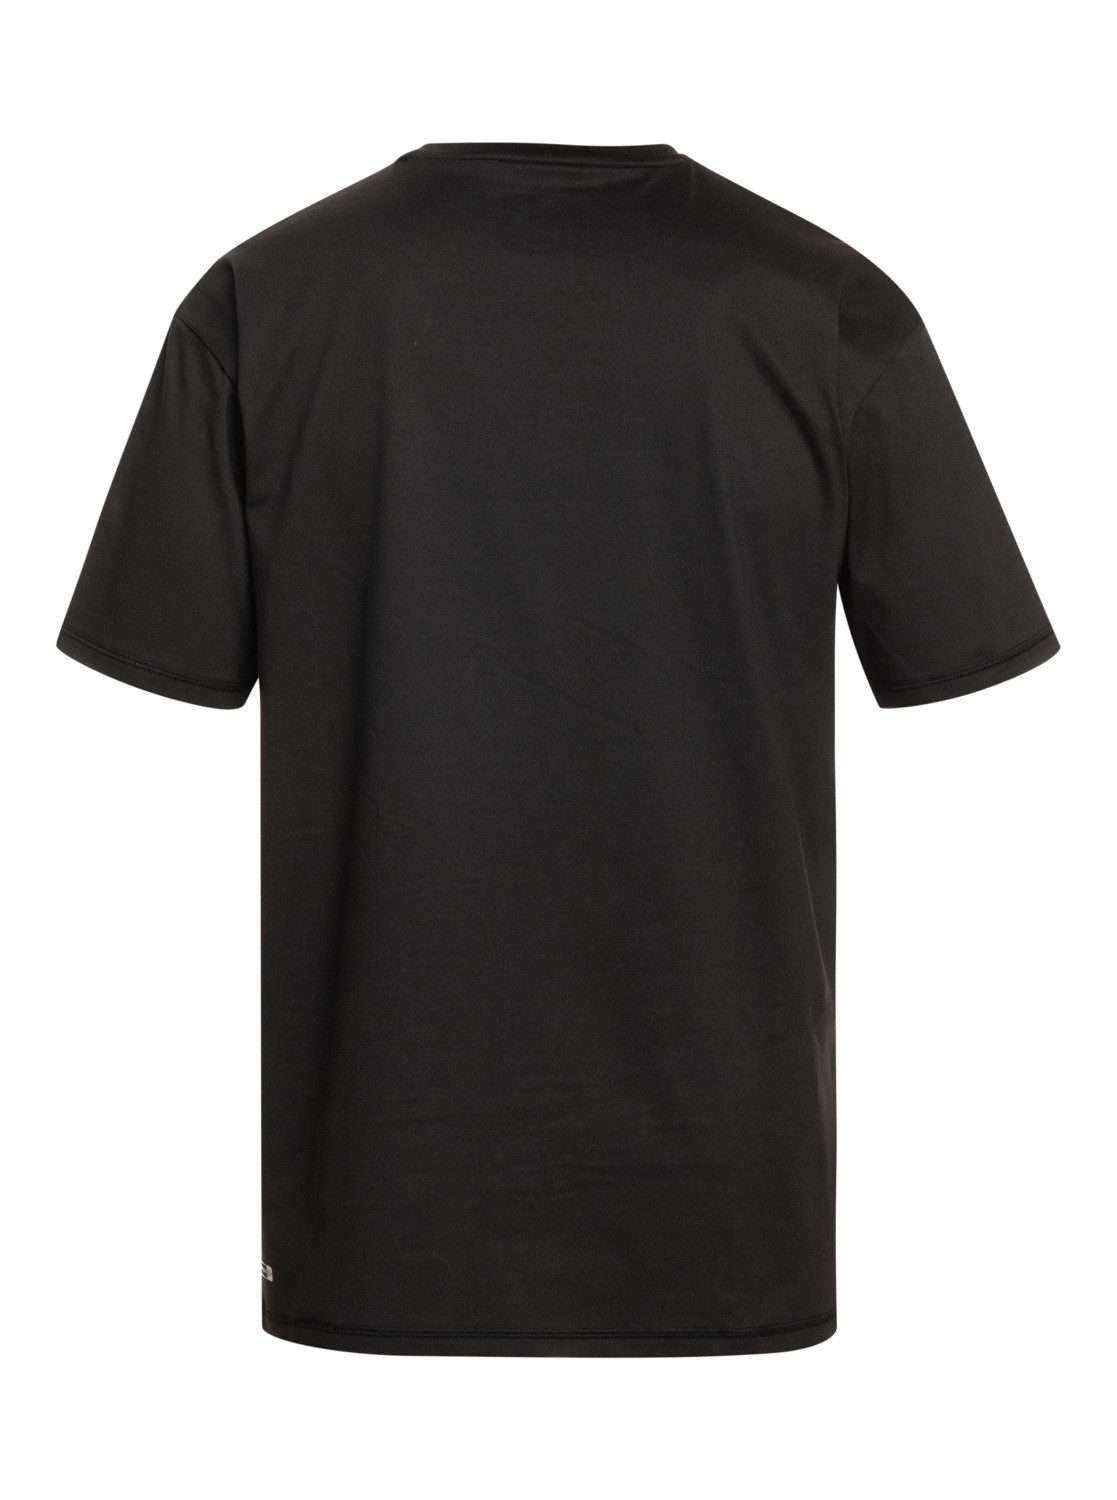 Streak Black Solid Neopren Quiksilver Shirt